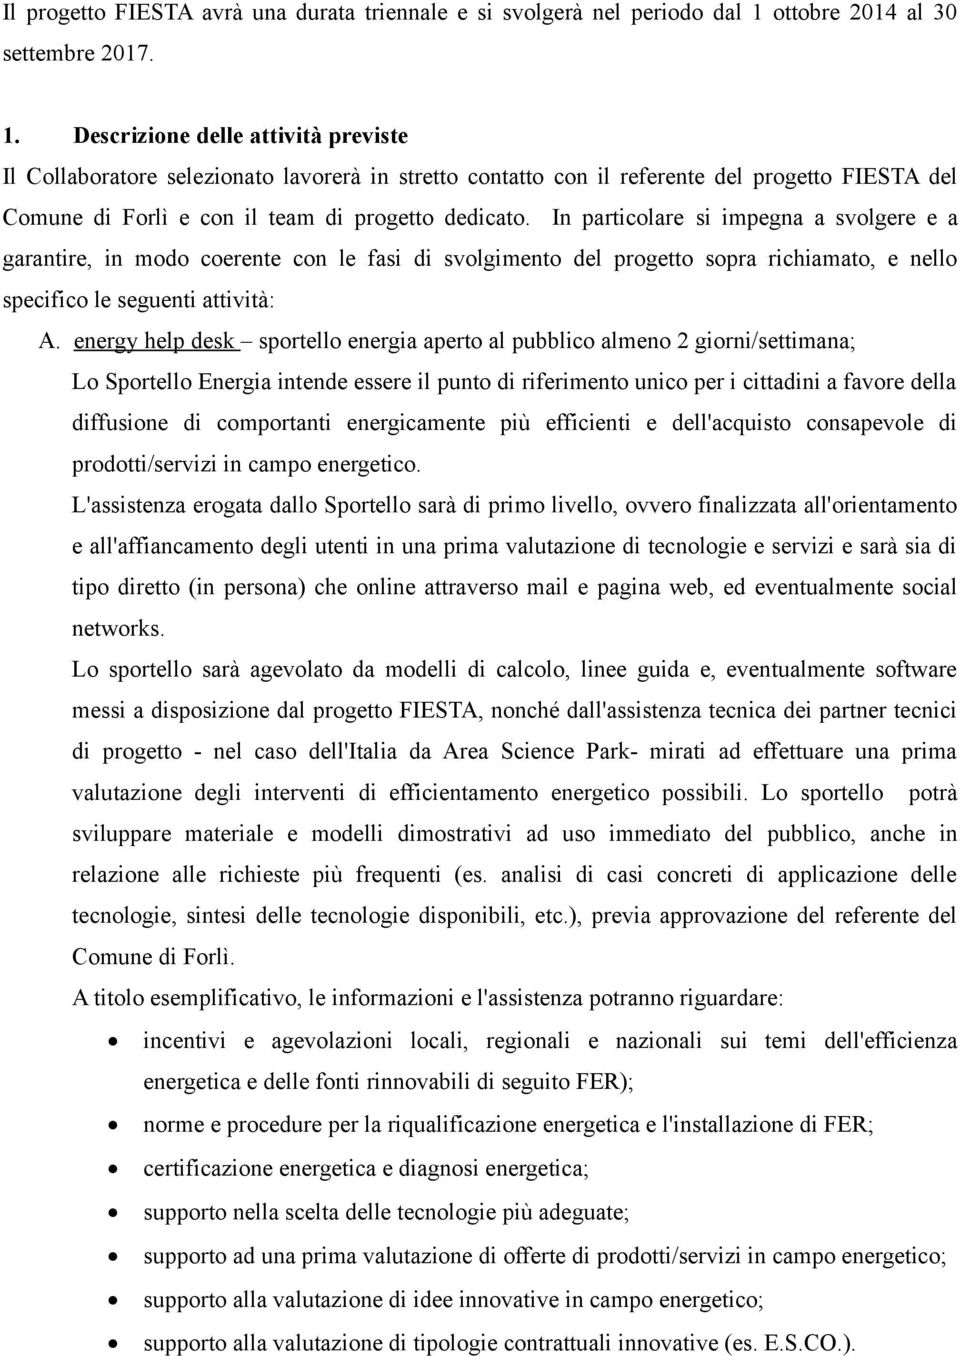 Descrizione delle attività previste Il Collaboratore selezionato lavorerà in stretto contatto con il referente del progetto FIESTA del Comune di Forlì e con il team di progetto dedicato.